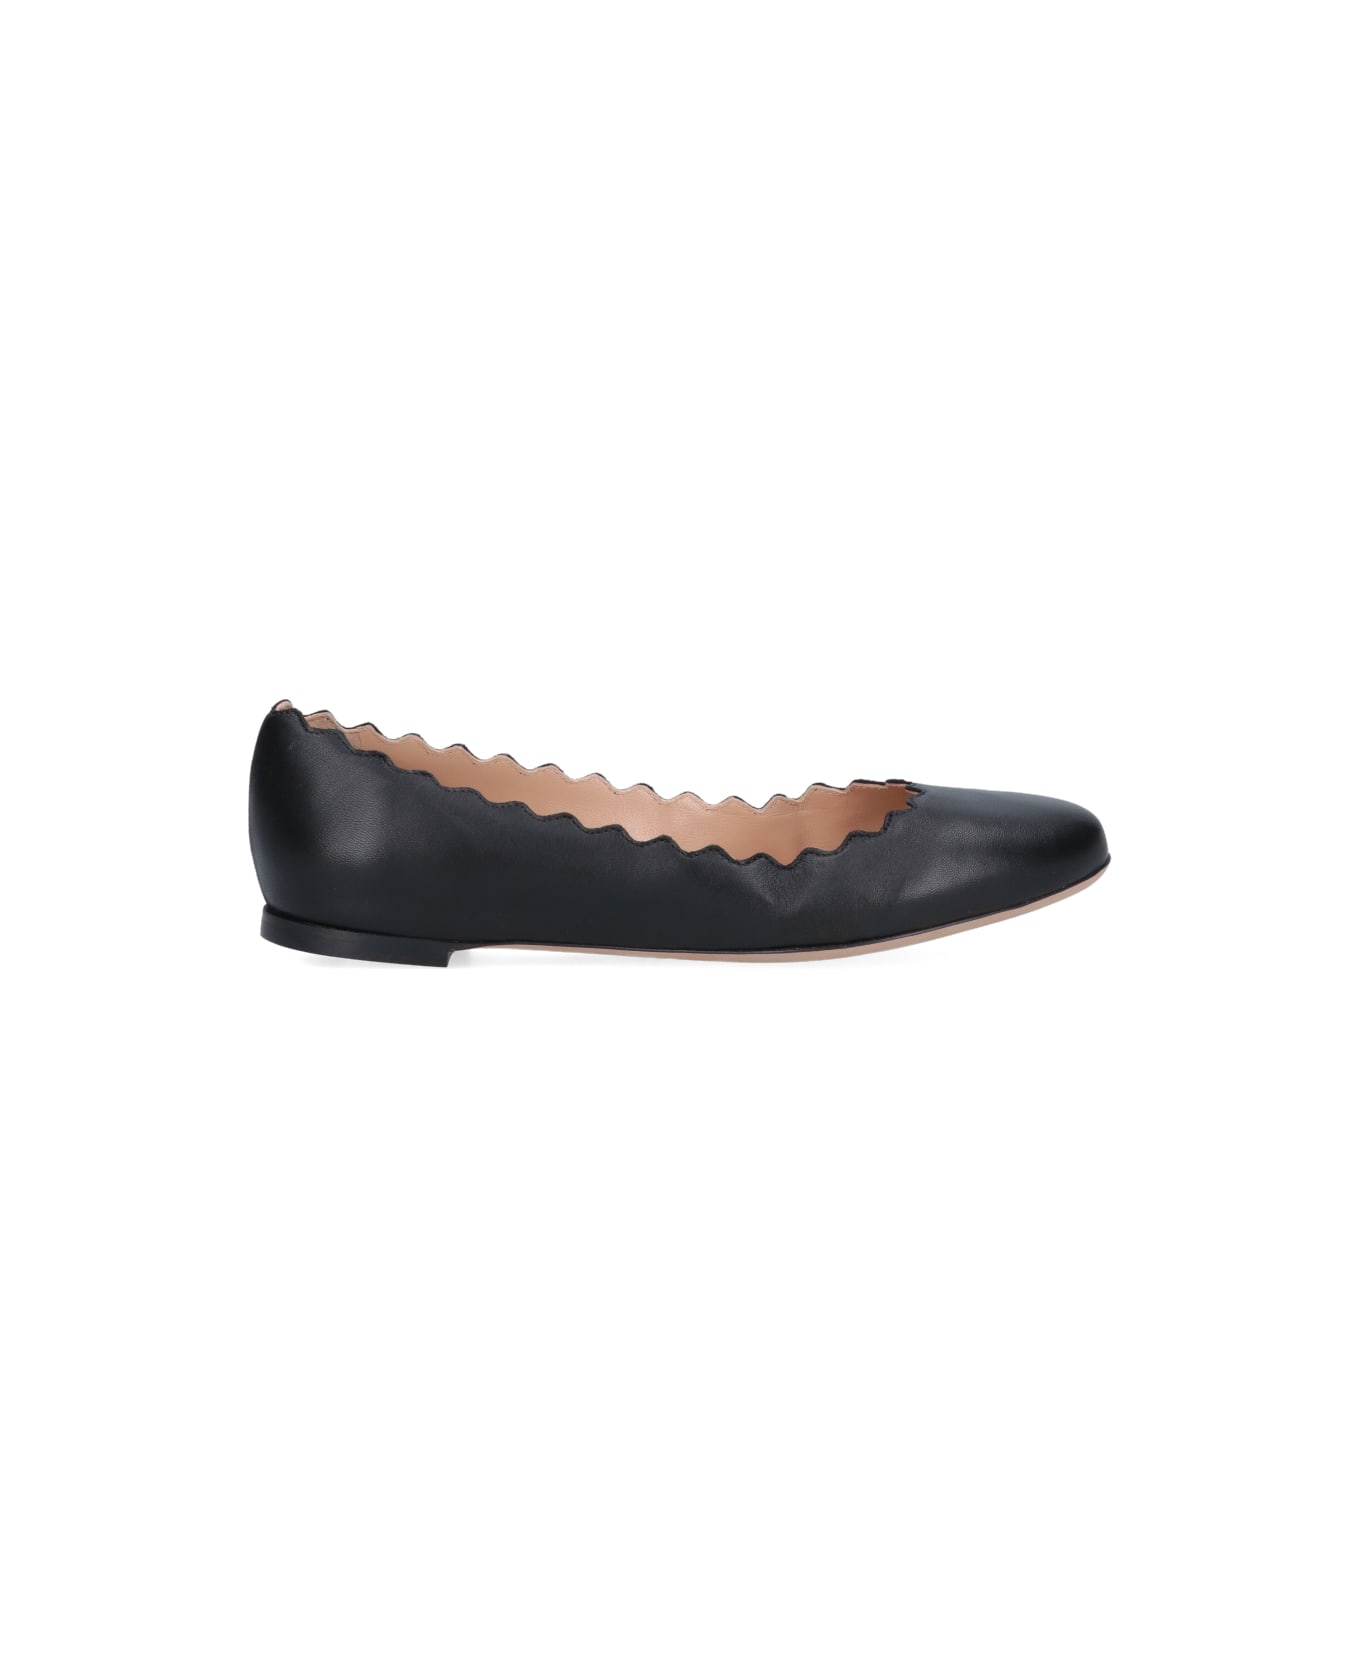 Chloé Flat Shoes Tri - Black